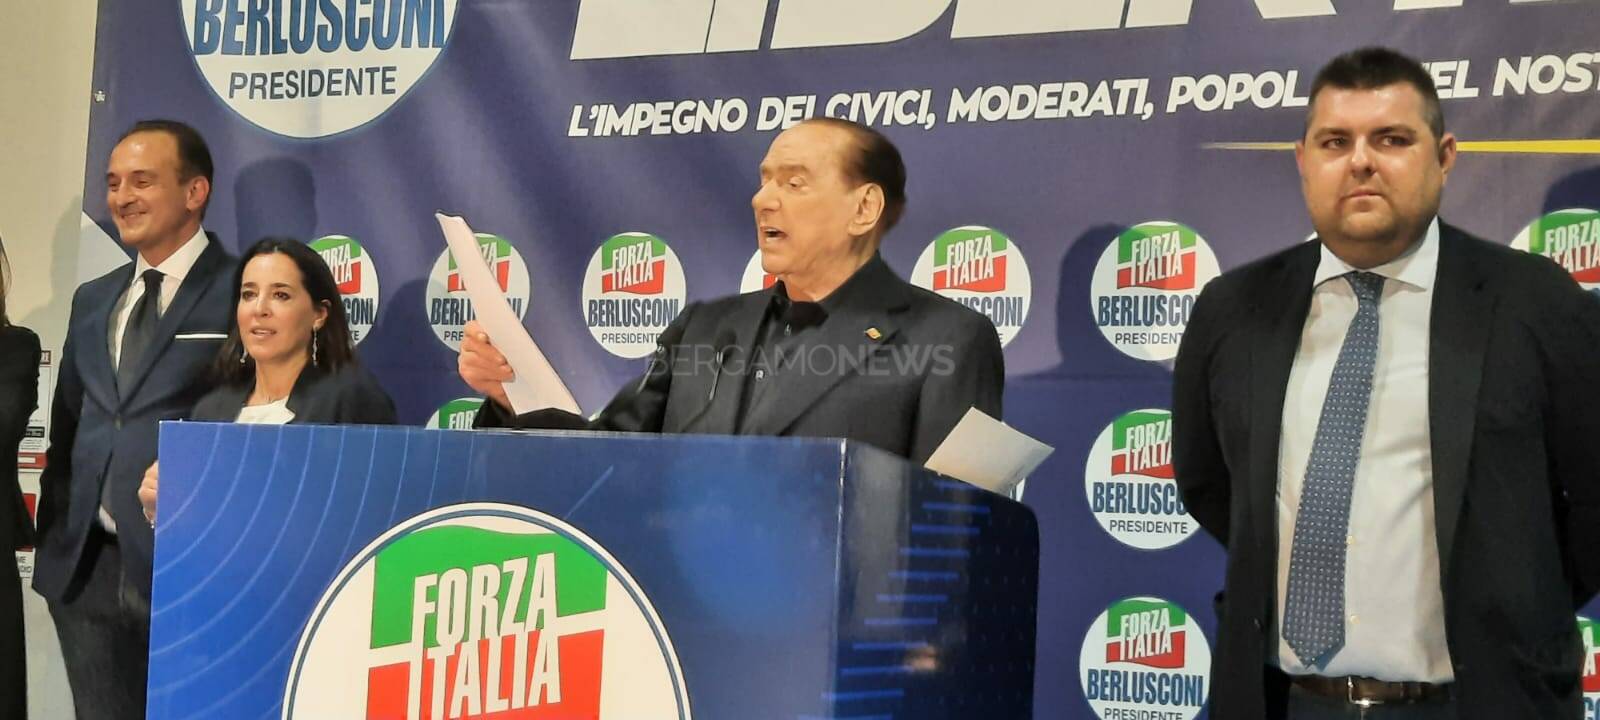 Berlusconi a Treviglio per la convention di Forza Italia